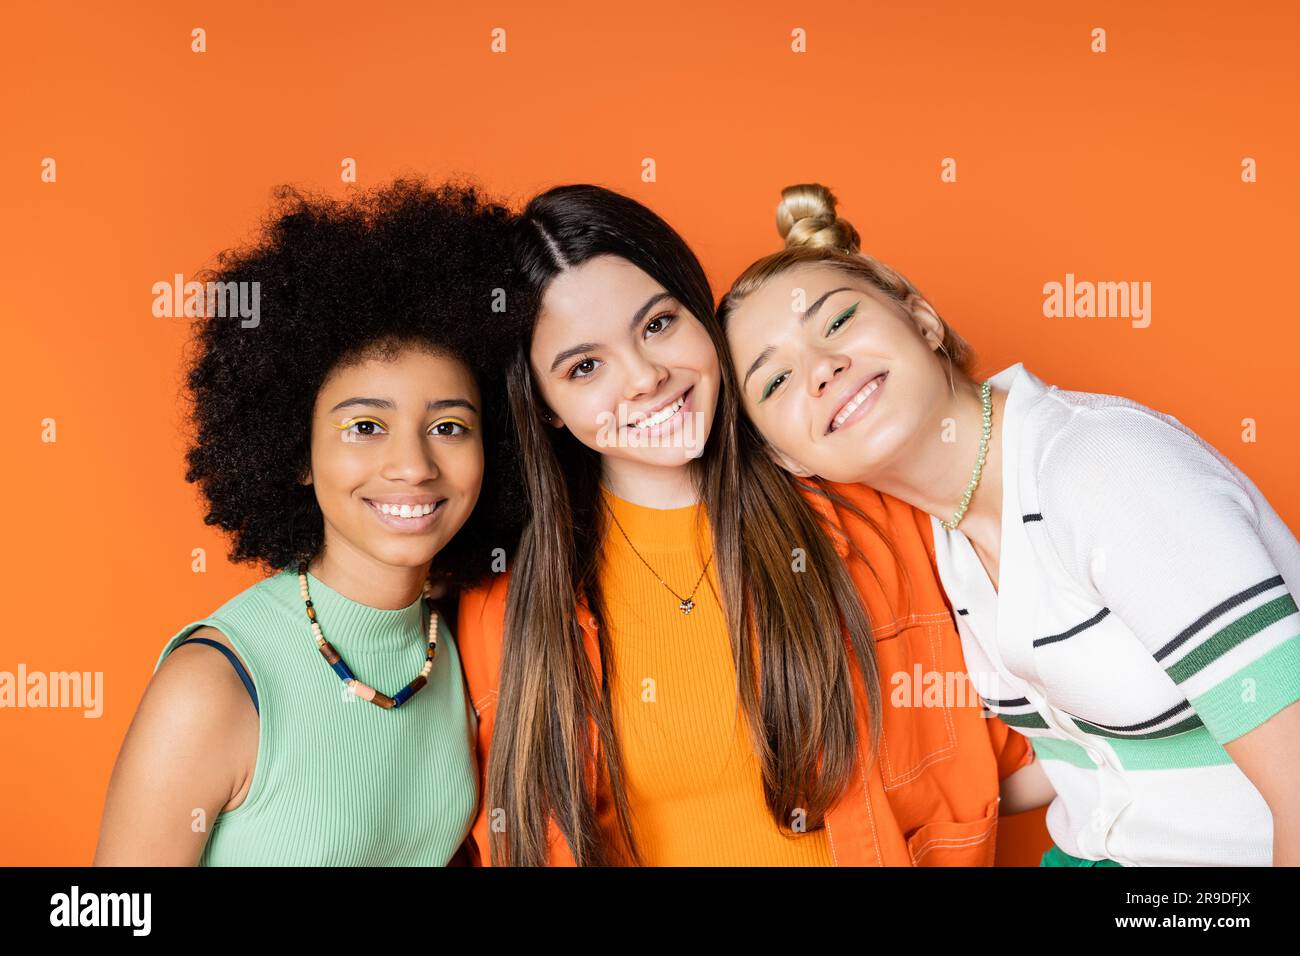 Porträt von lächelnden und multiethnischen Teenagern mit hellem Make-up, die in die Kamera schauen, während sie zusammen posieren, isoliert auf orangefarbenen, trendigen Outfits und Stockfoto